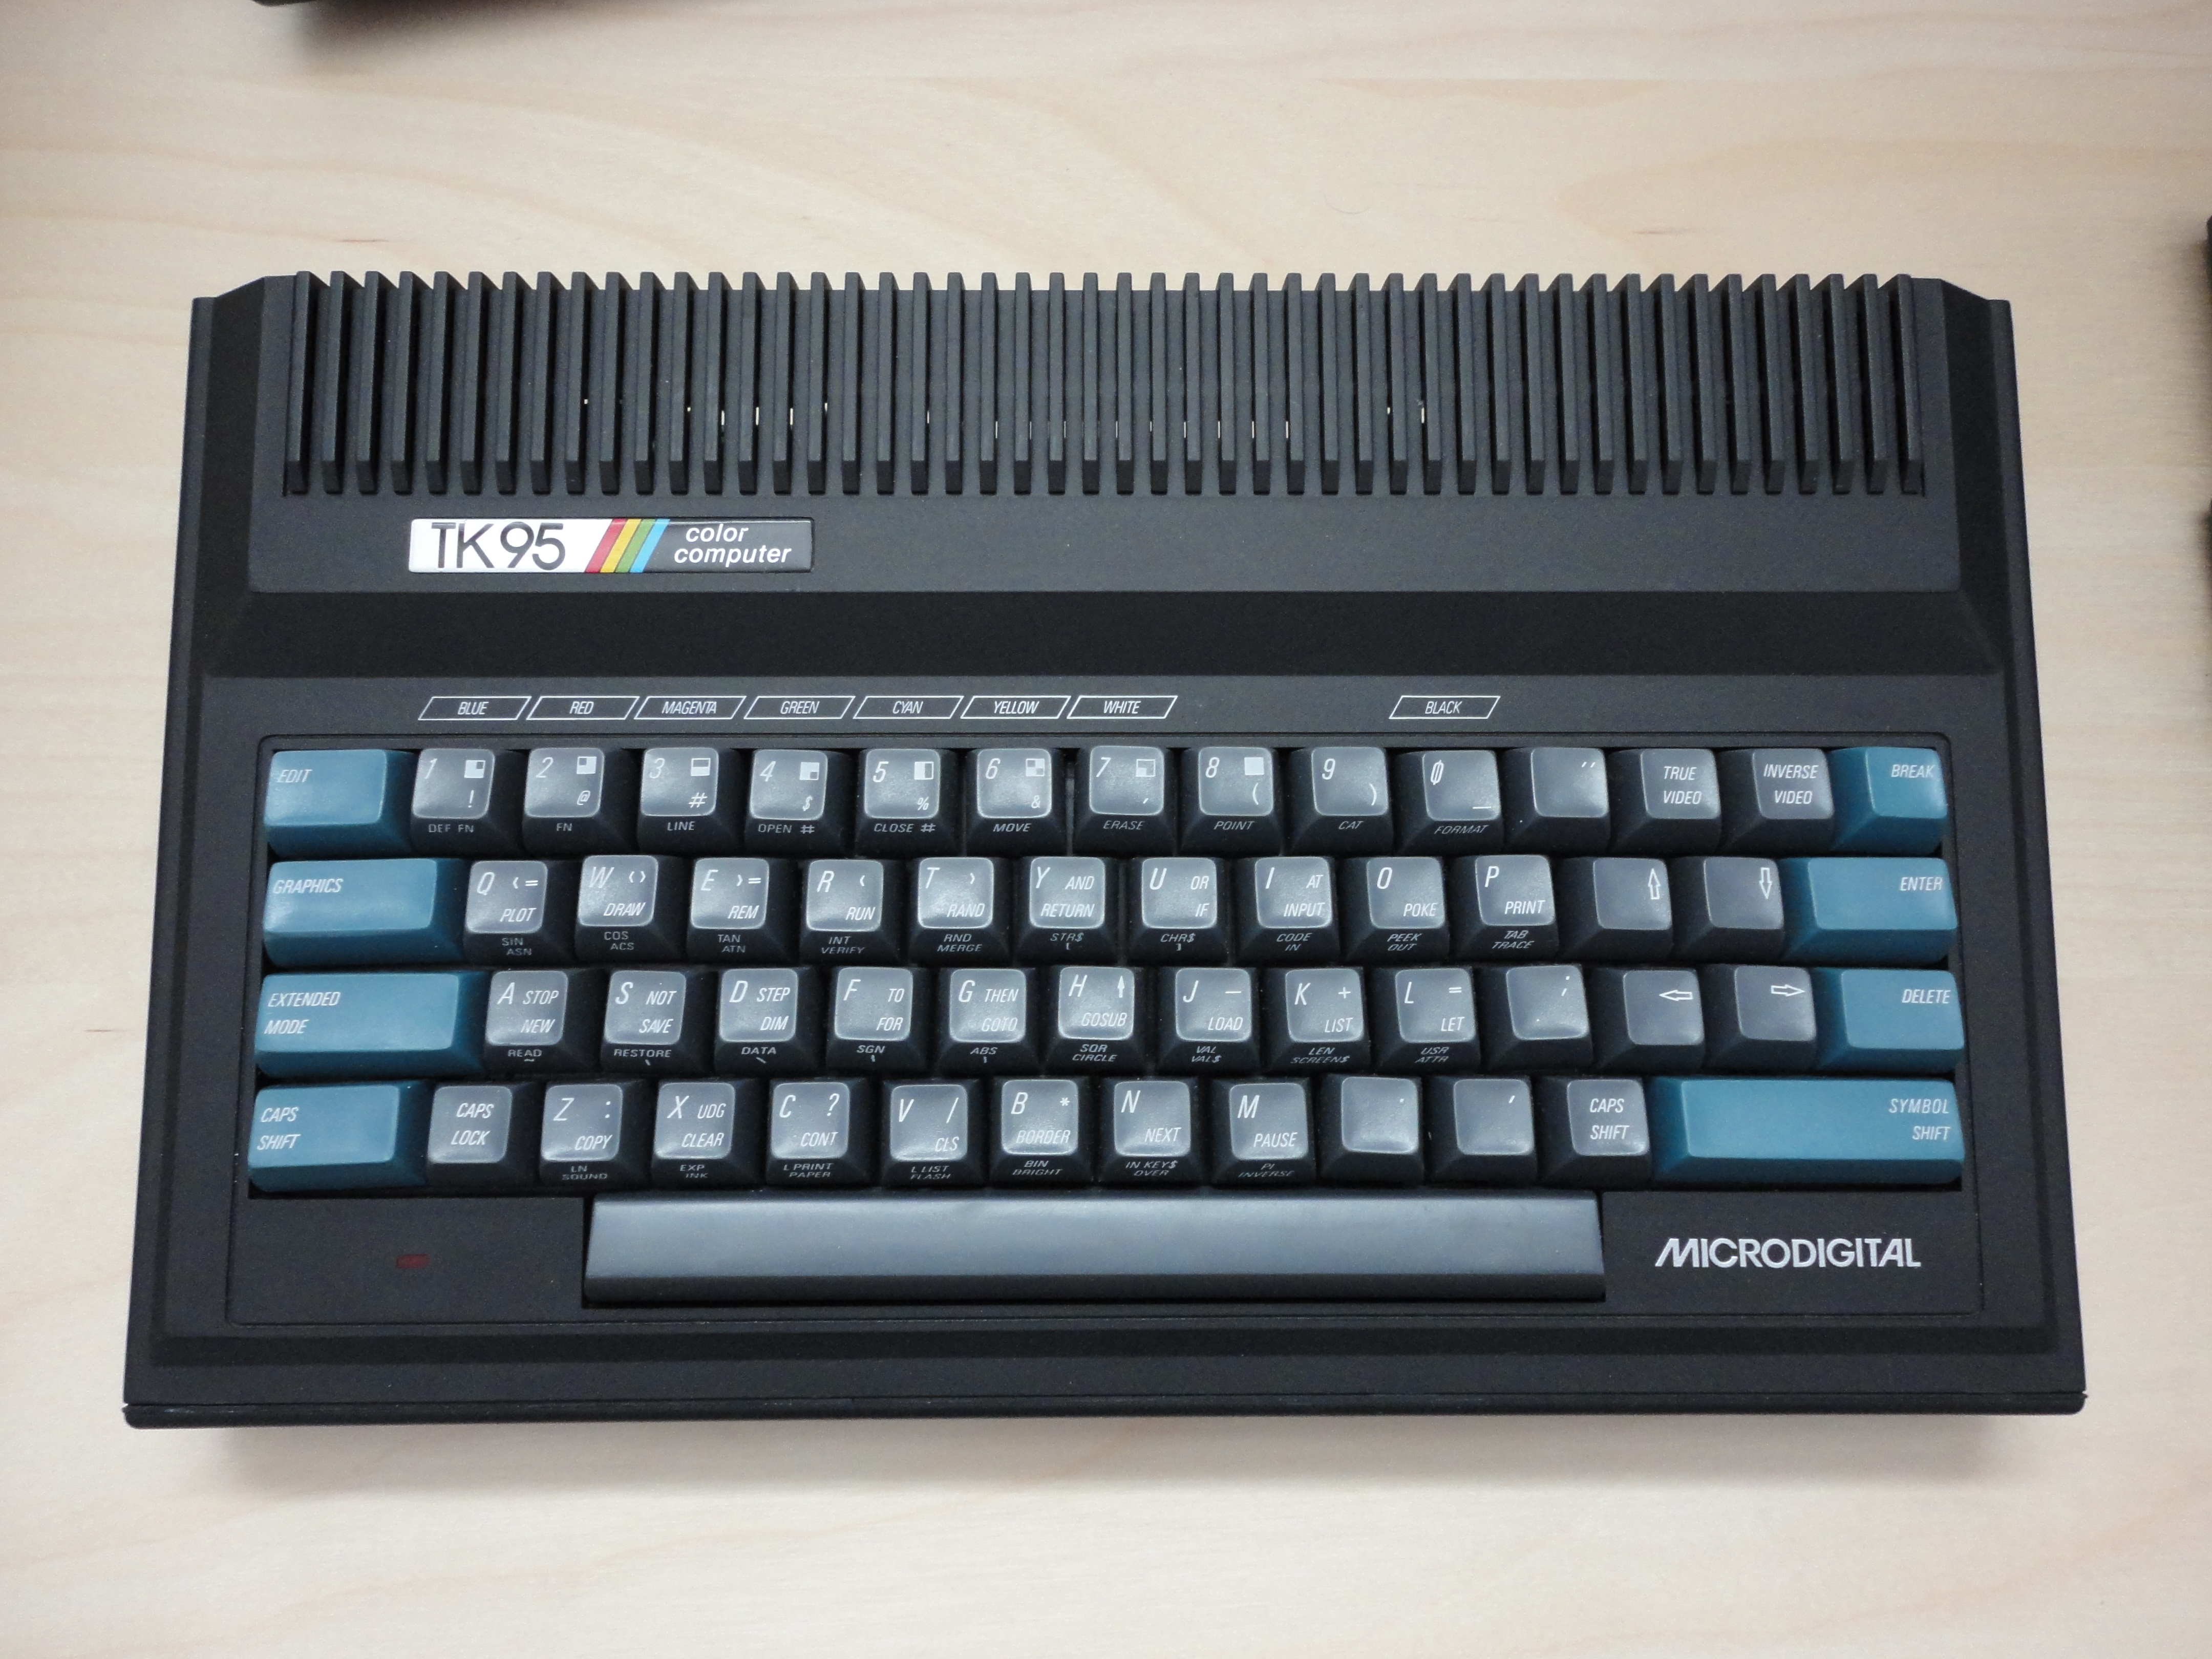 Спектрум 7 класс. Спектрум zx80. ZX Spectrum zx80. ZX Spectrum 80. ZX Spectrum 48k Basic.